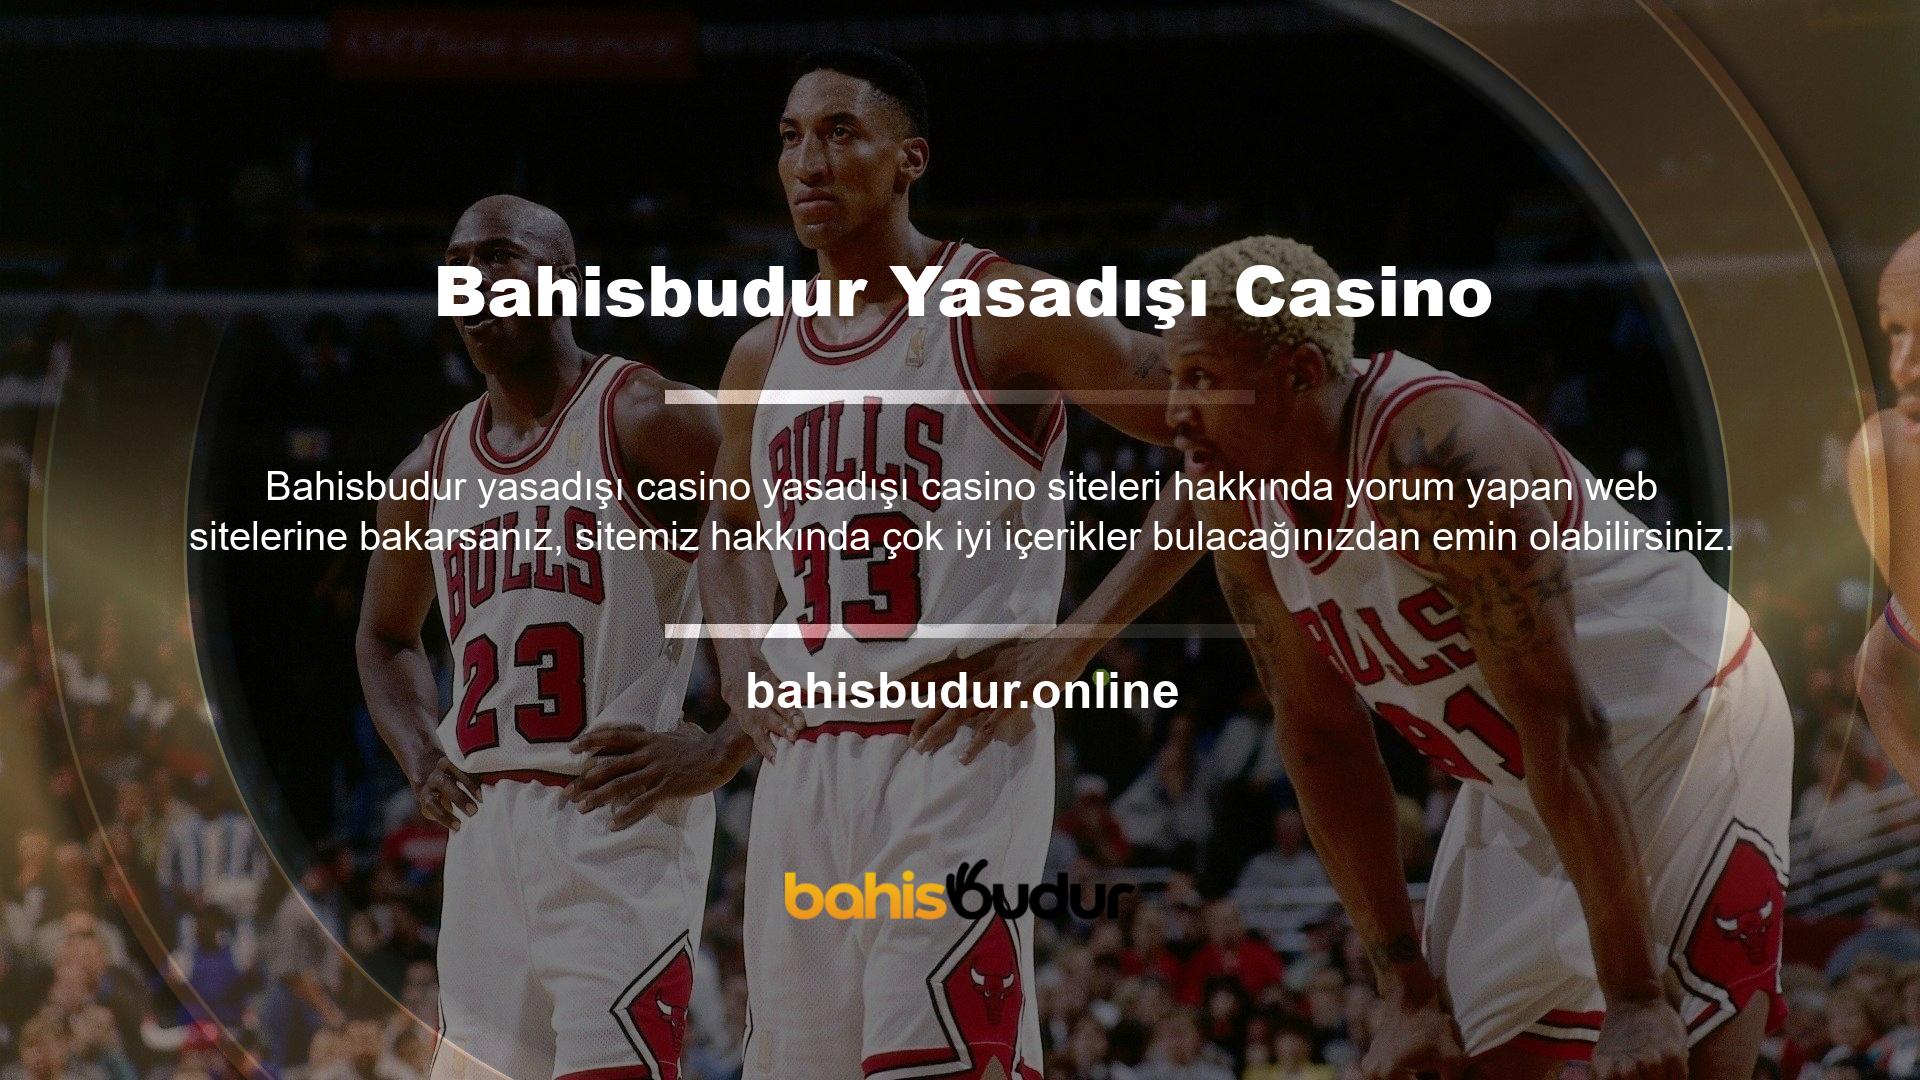 Bahisbudur gerçek zamanlı destek departmanımız siz değerli kullanıcılarımızın sorunlarını çözmek için 7/24 çalışmaktadır